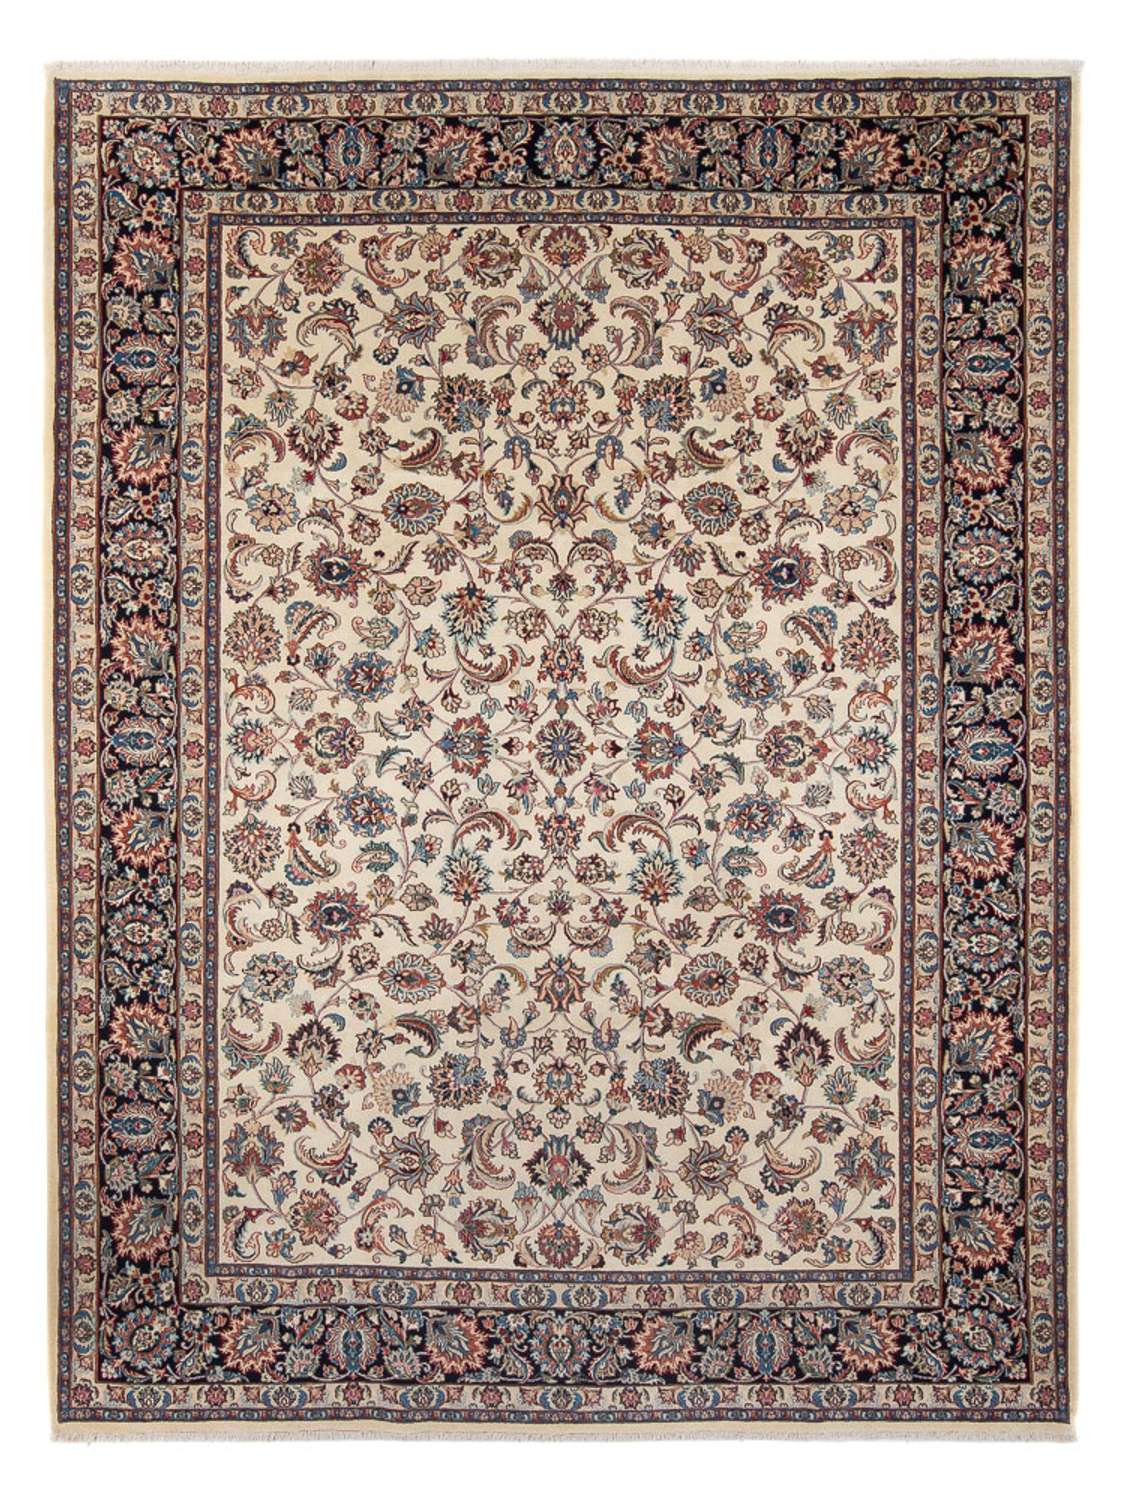 Tapis persan - Classique - Royal - 340 x 244 cm - crème